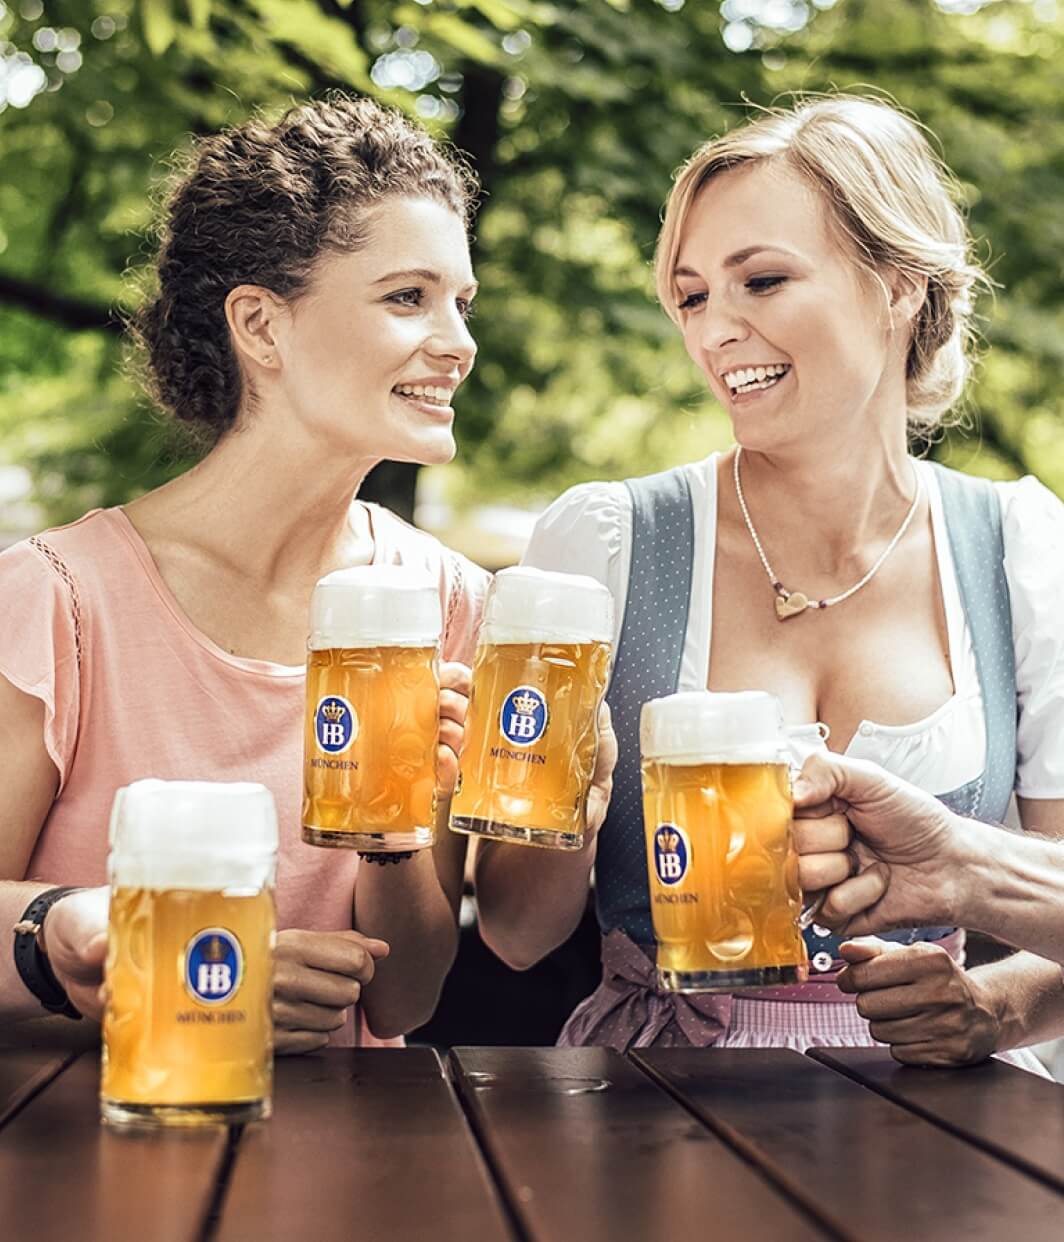 Girls enjoying hofbrauhaus beer